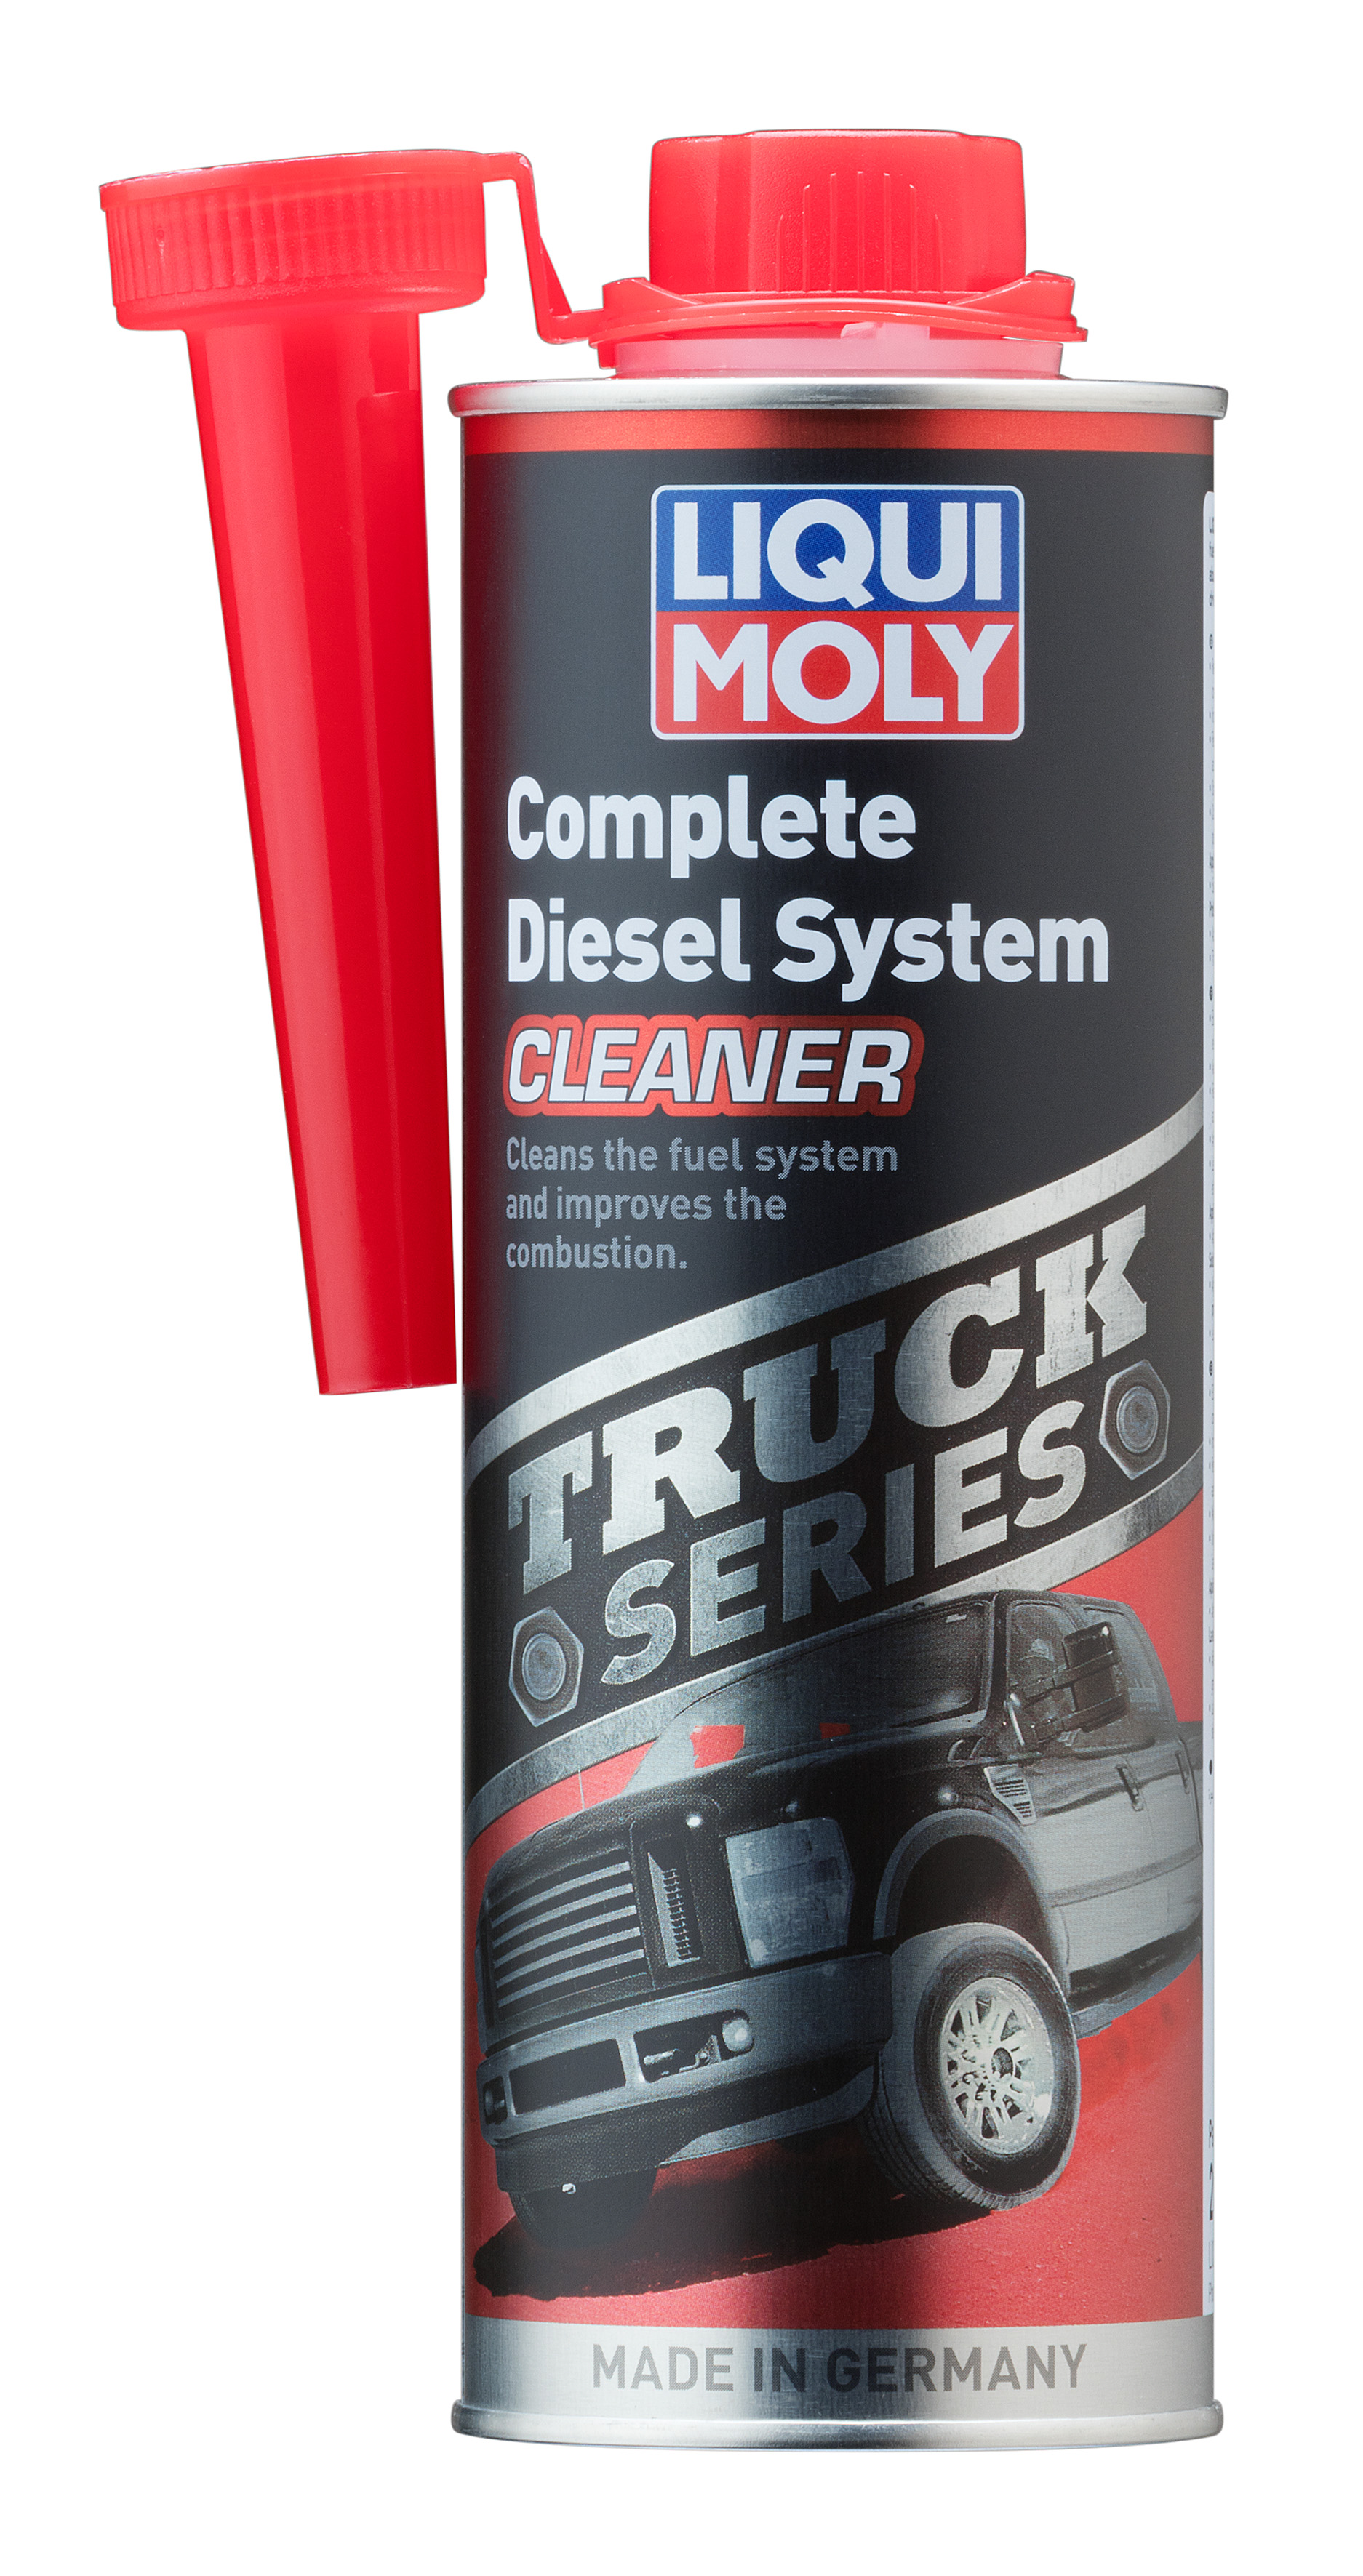 Очиститель диз.систем тяжелых внедорожников и пикапов Truck Series Complete Diesel System Cleaner, 500мл - Liqui Moly 20996